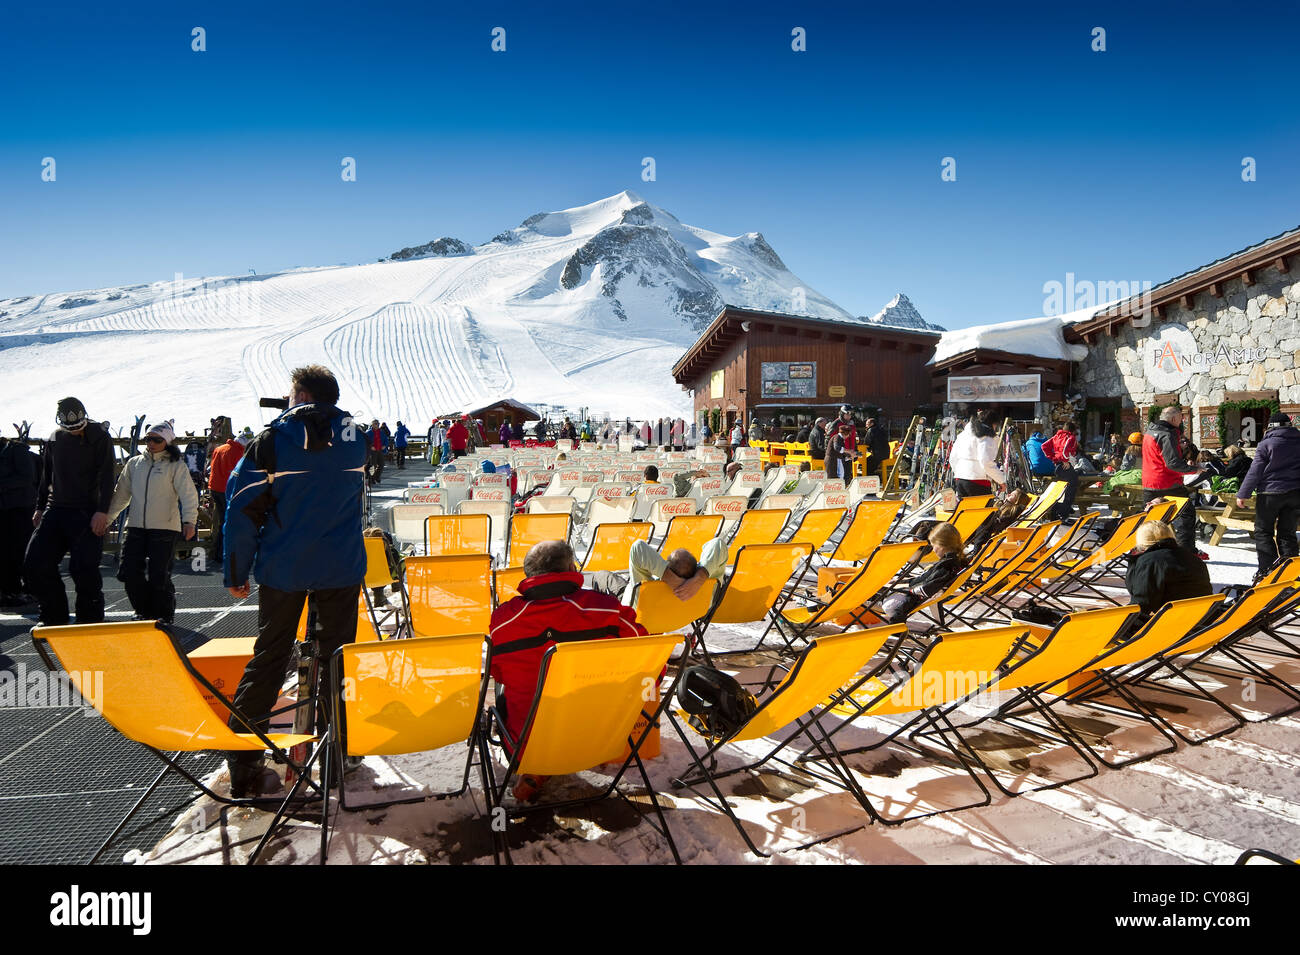 Liegestühle, Berghütte, La Grande Motte, Tignes, Val d ' Isère, Savoie, Alpen, Frankreich Stockfoto